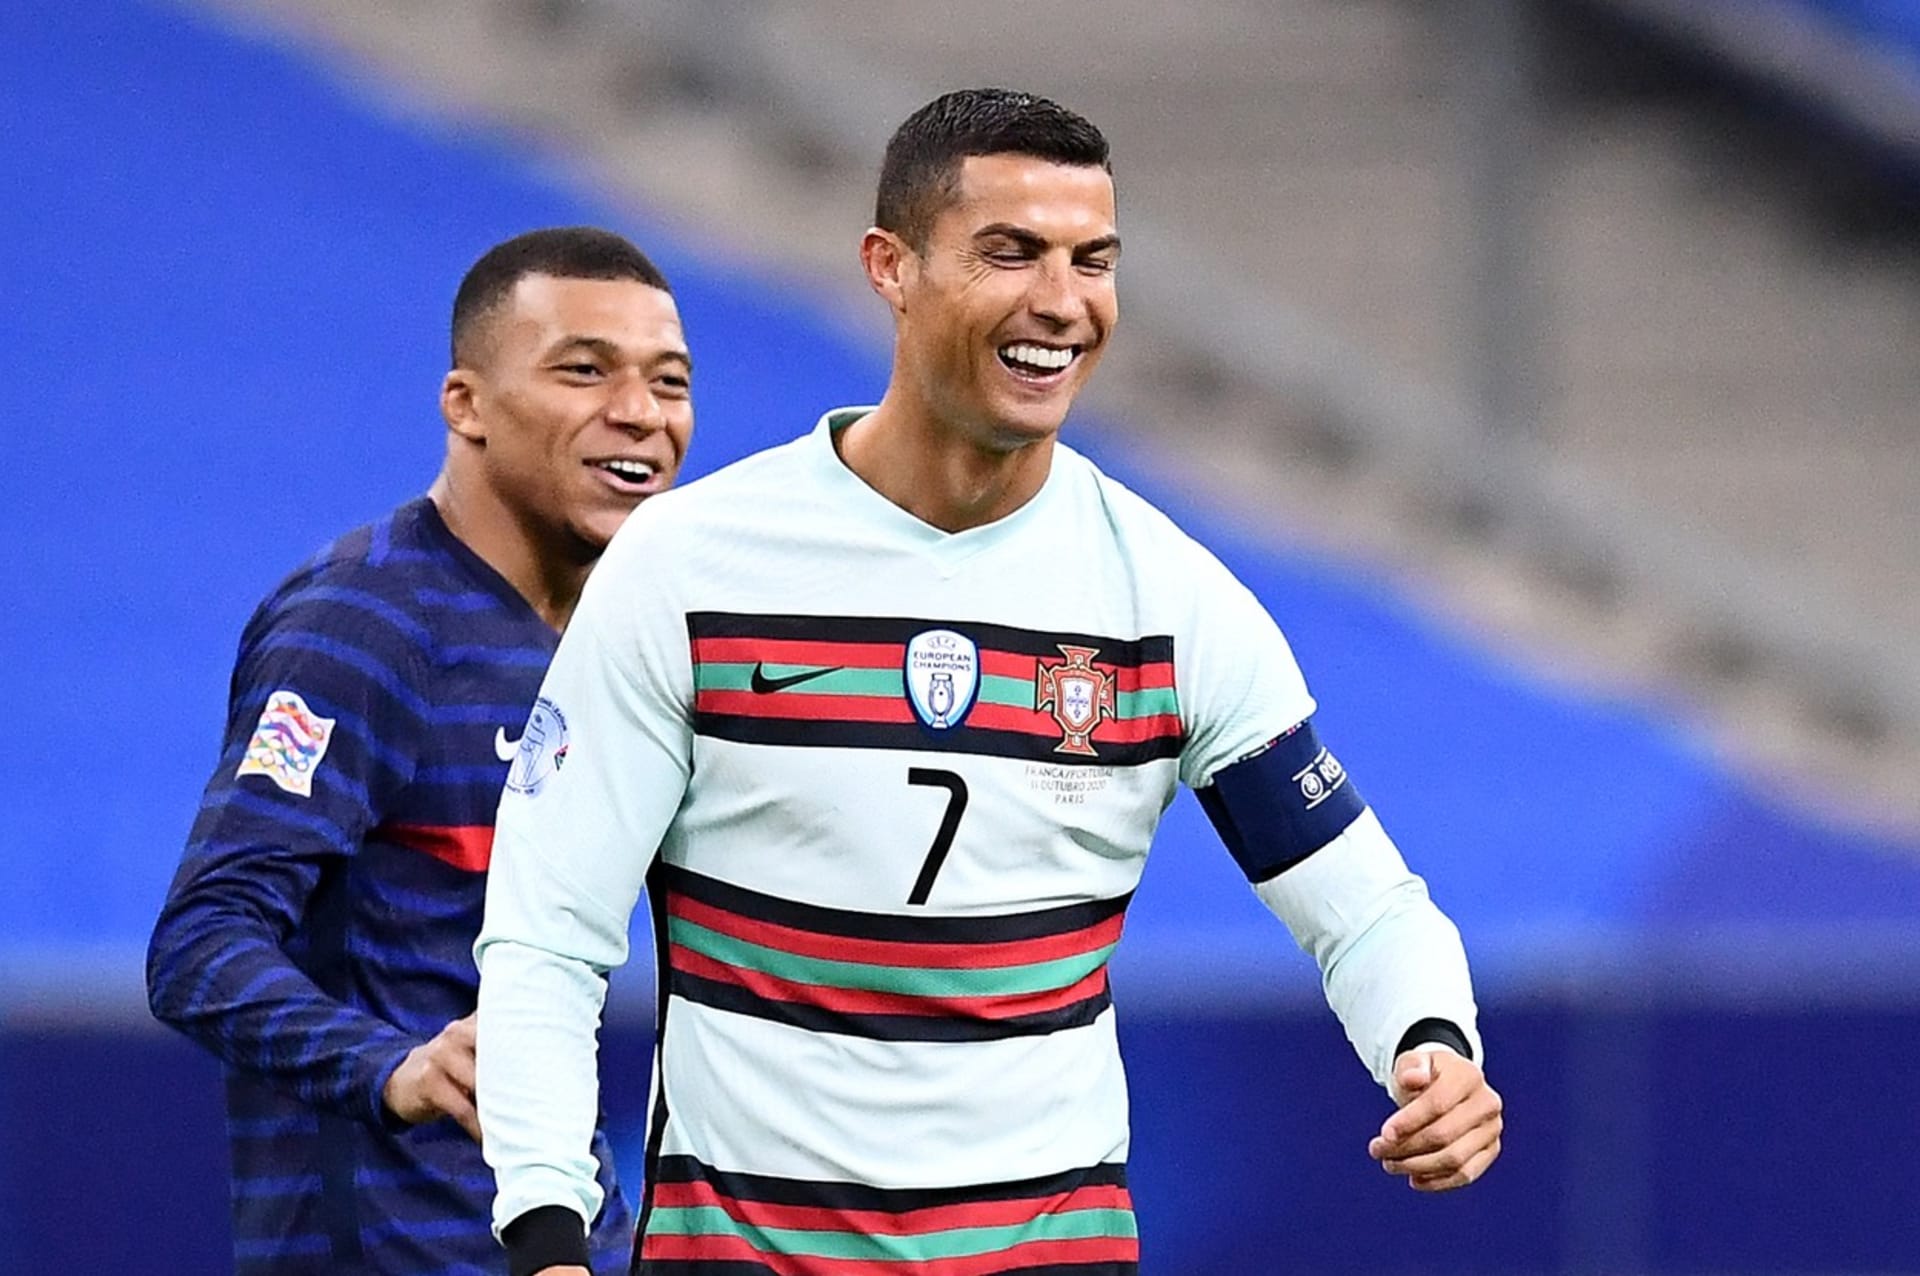 Fotbal může být zábava. Potvrzují to Kylian Mbappé a Cristiano Ronaldo (zleva) při reprezentačním zápase Ligy národů Francie–Portugalsko 11. října 2020 v Paříži. 